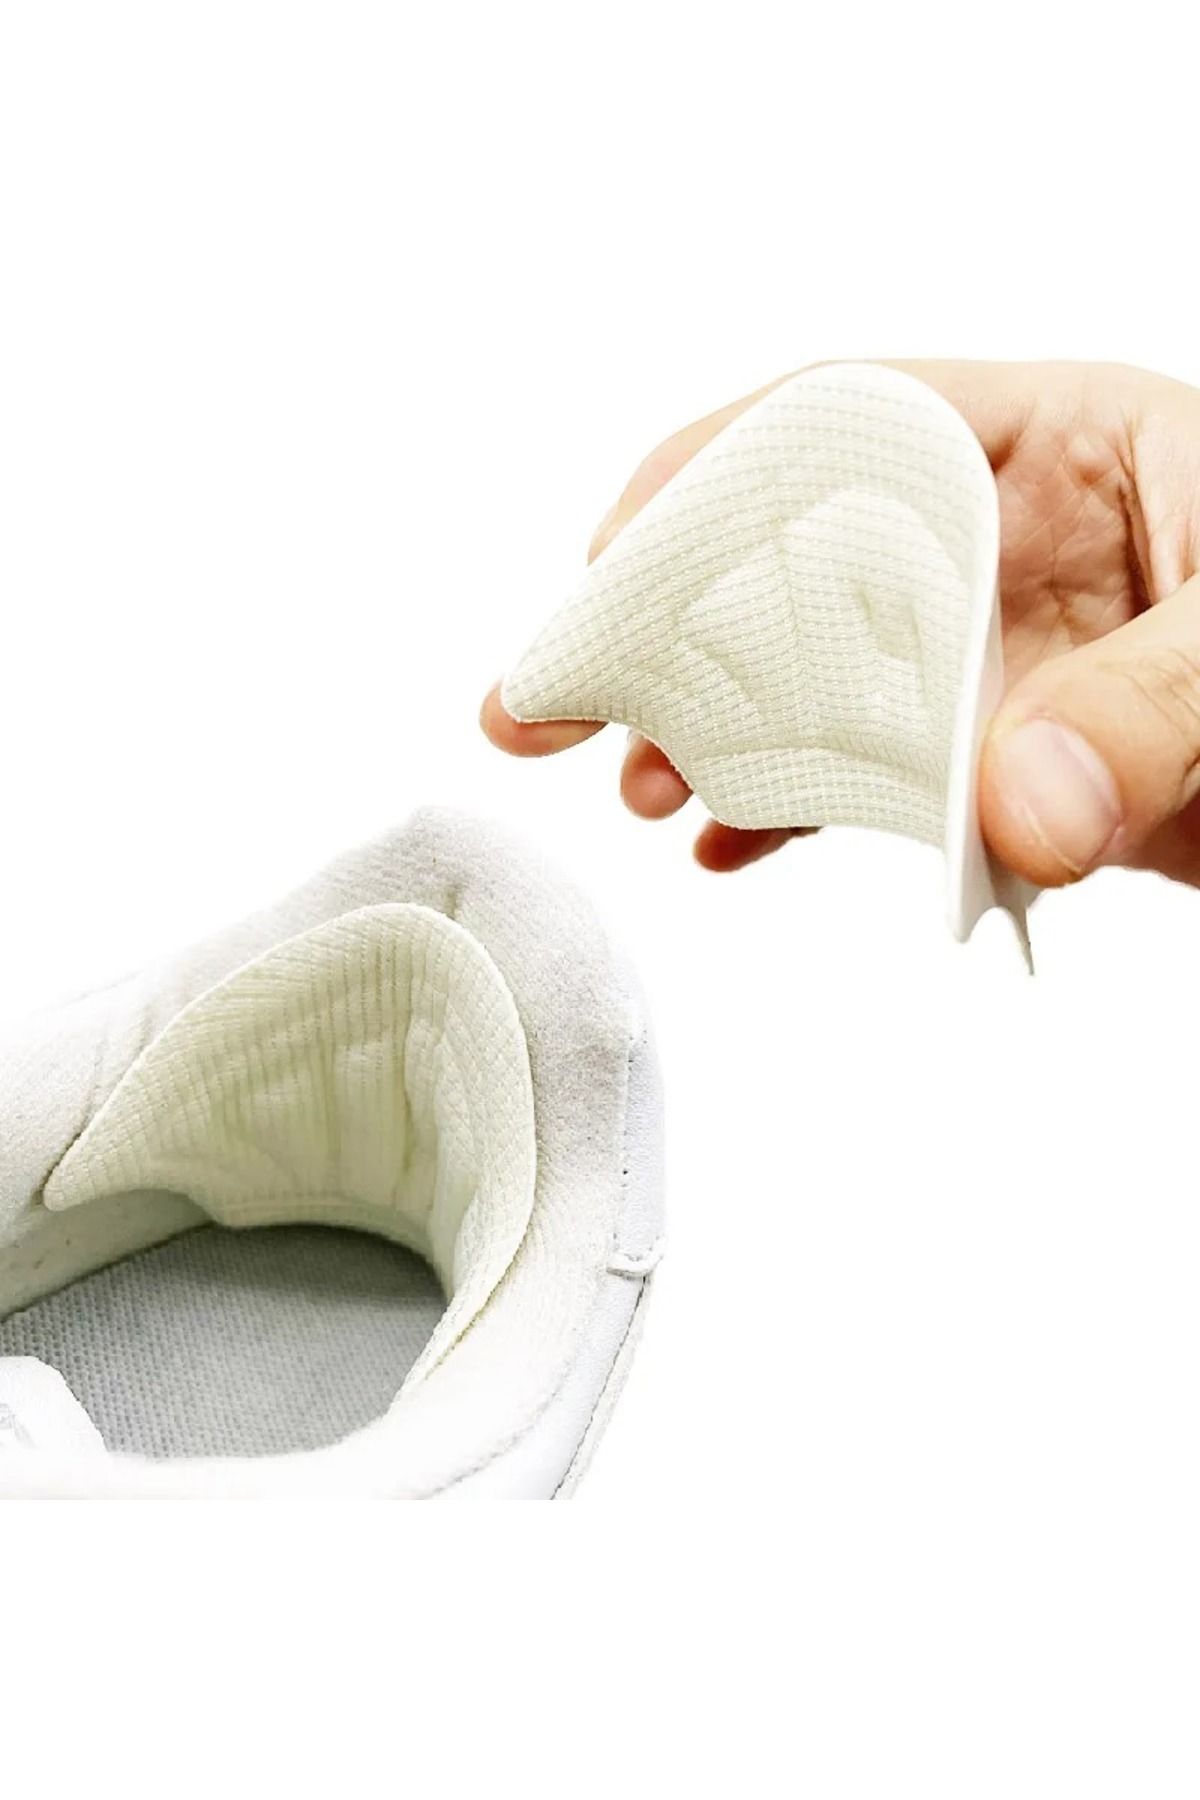 Jetcom Ortopedik Ayakkabı Topuk Vurma Önleyici Daraltma Kumaş Topuk Koruyucu Yastığı Pedi